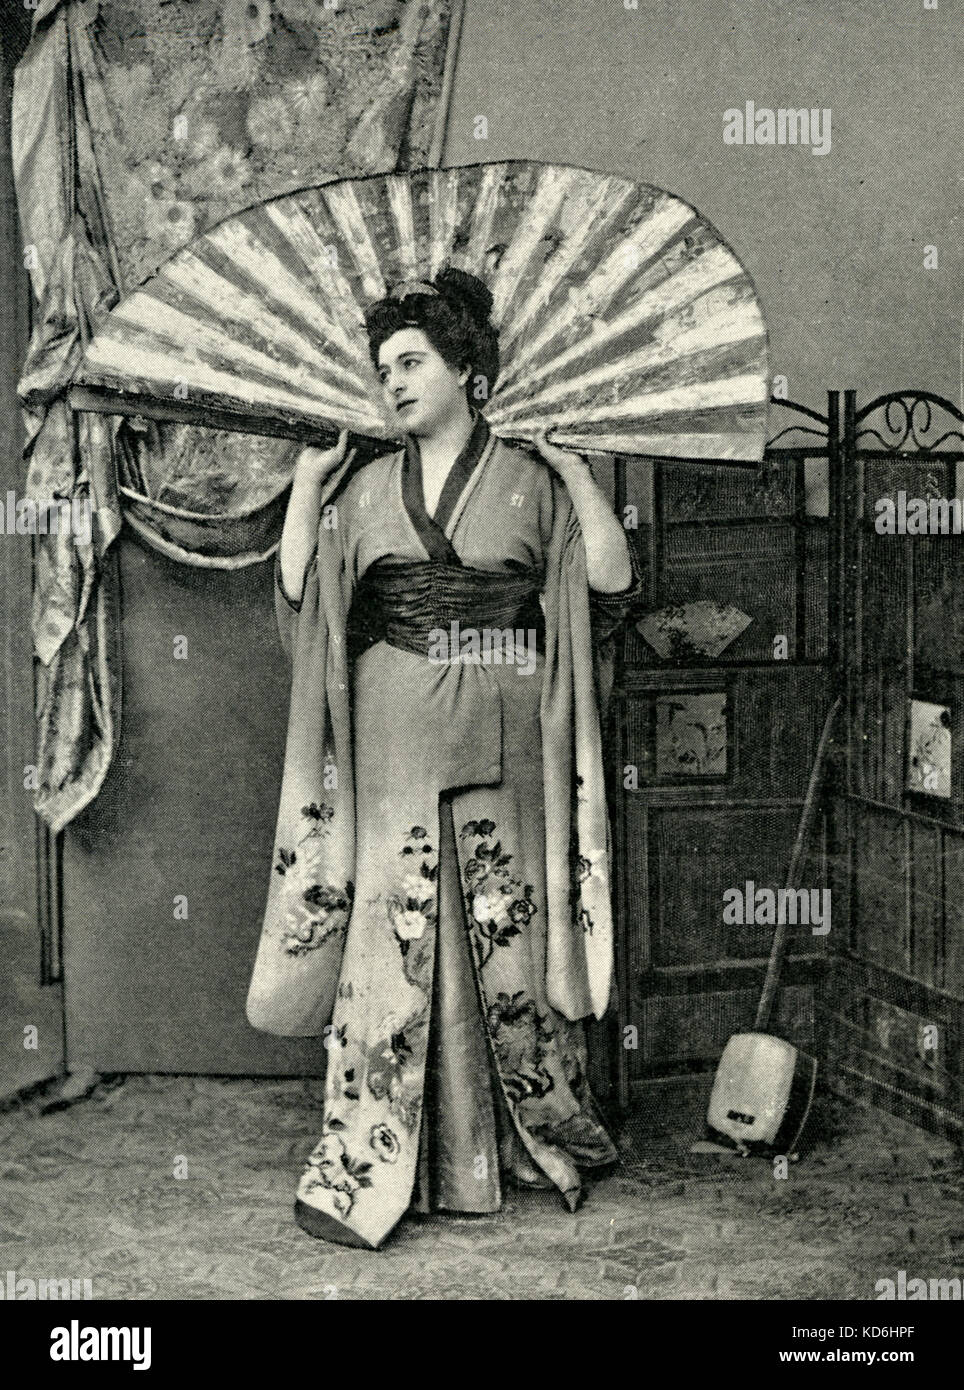 Hericlea Darclée nel ruolo del titolo di "Iris" in Mascagni opera, nel 1899. Parigi premiere con l'originale doppiaggio italiano, con Guglielmo Caruso e Fernando De Lucia. Compositore italiano (1863-1945). Foto Stock